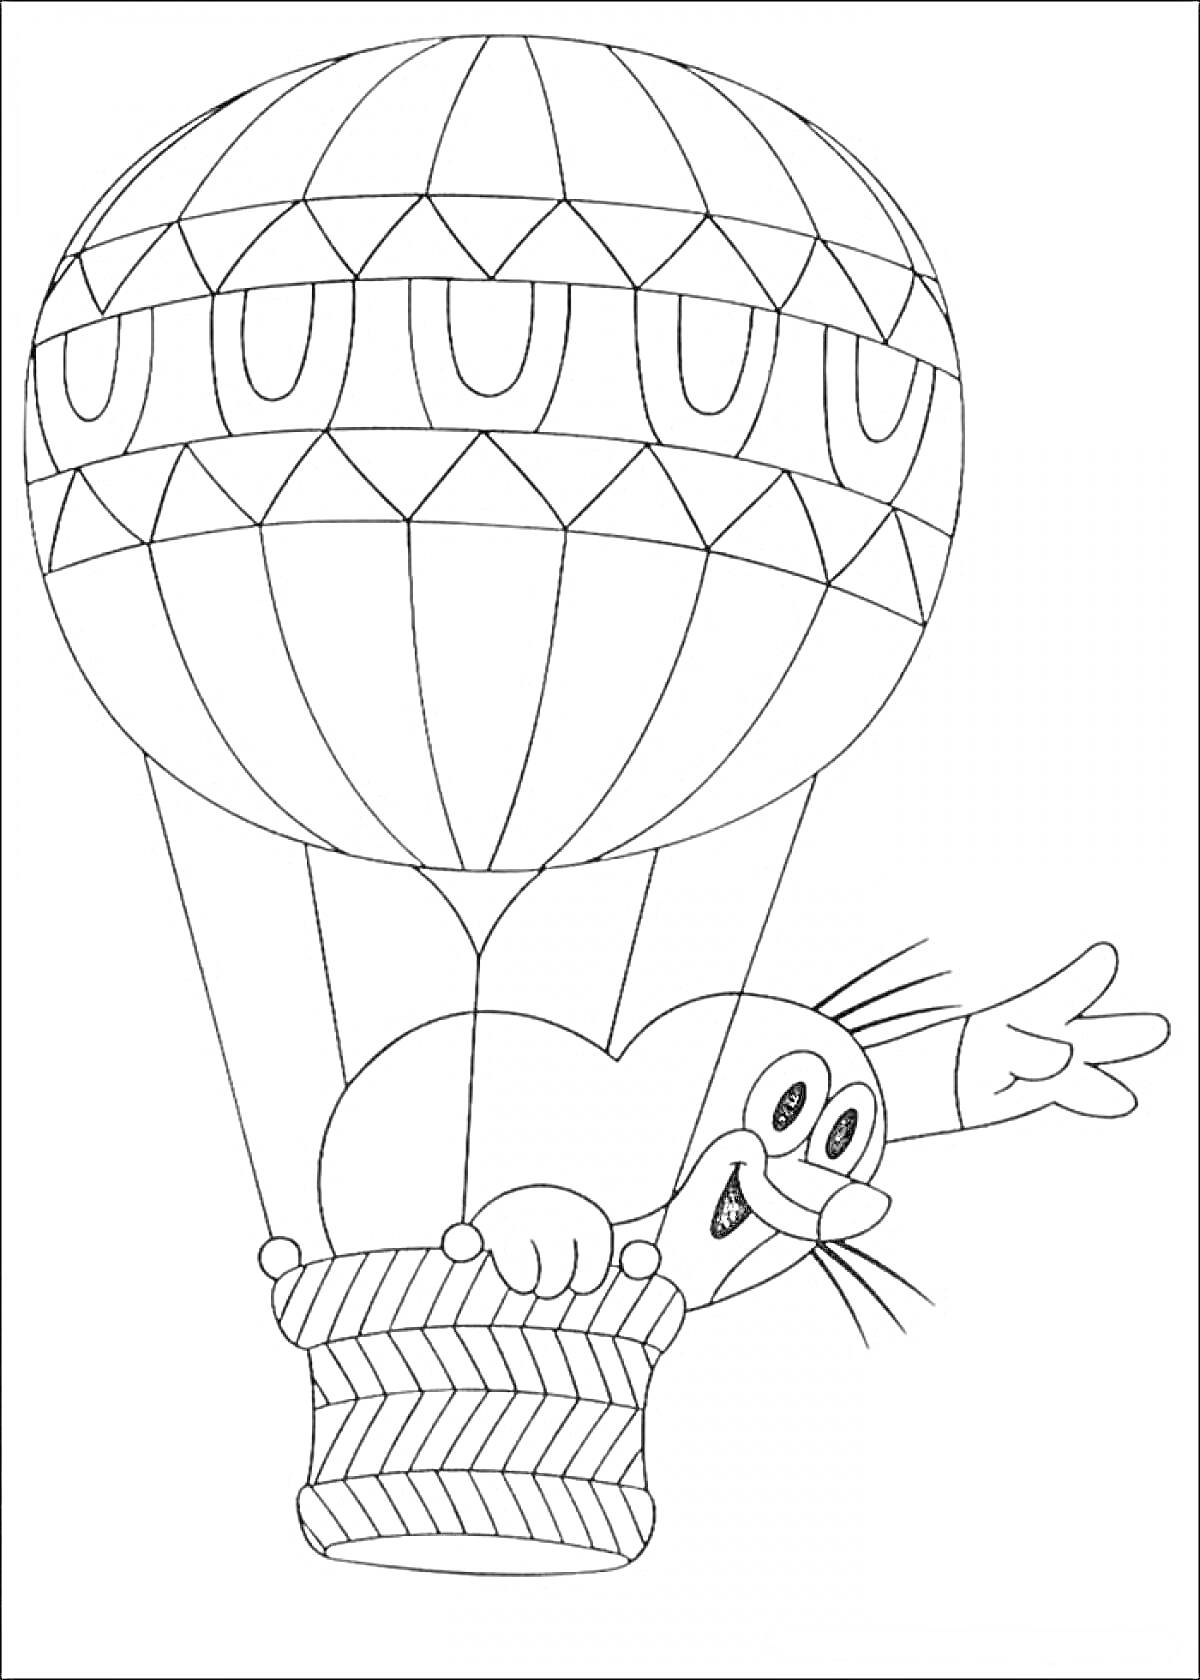 Воздушный шар с кошкой в корзине